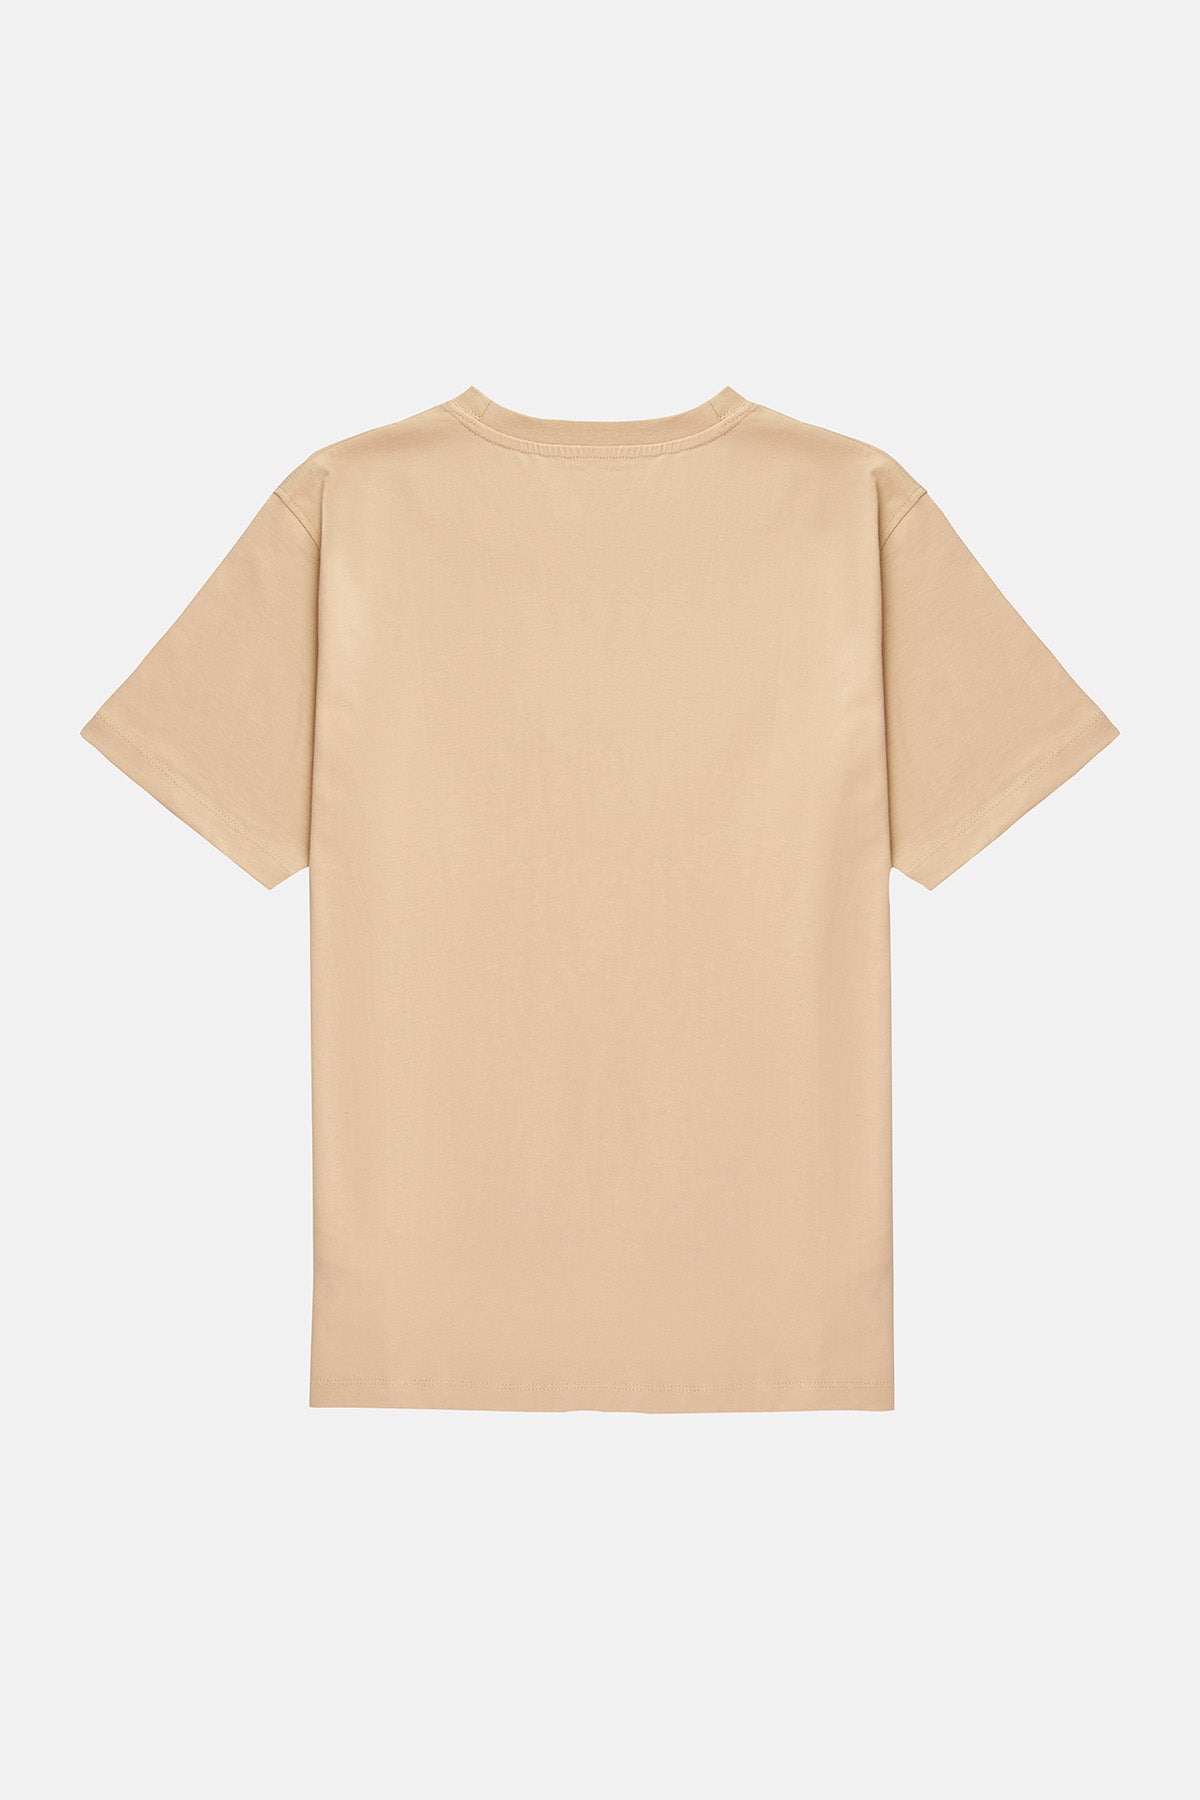 Sincap Soft Supreme T-Shirt  - Parşömen Bej